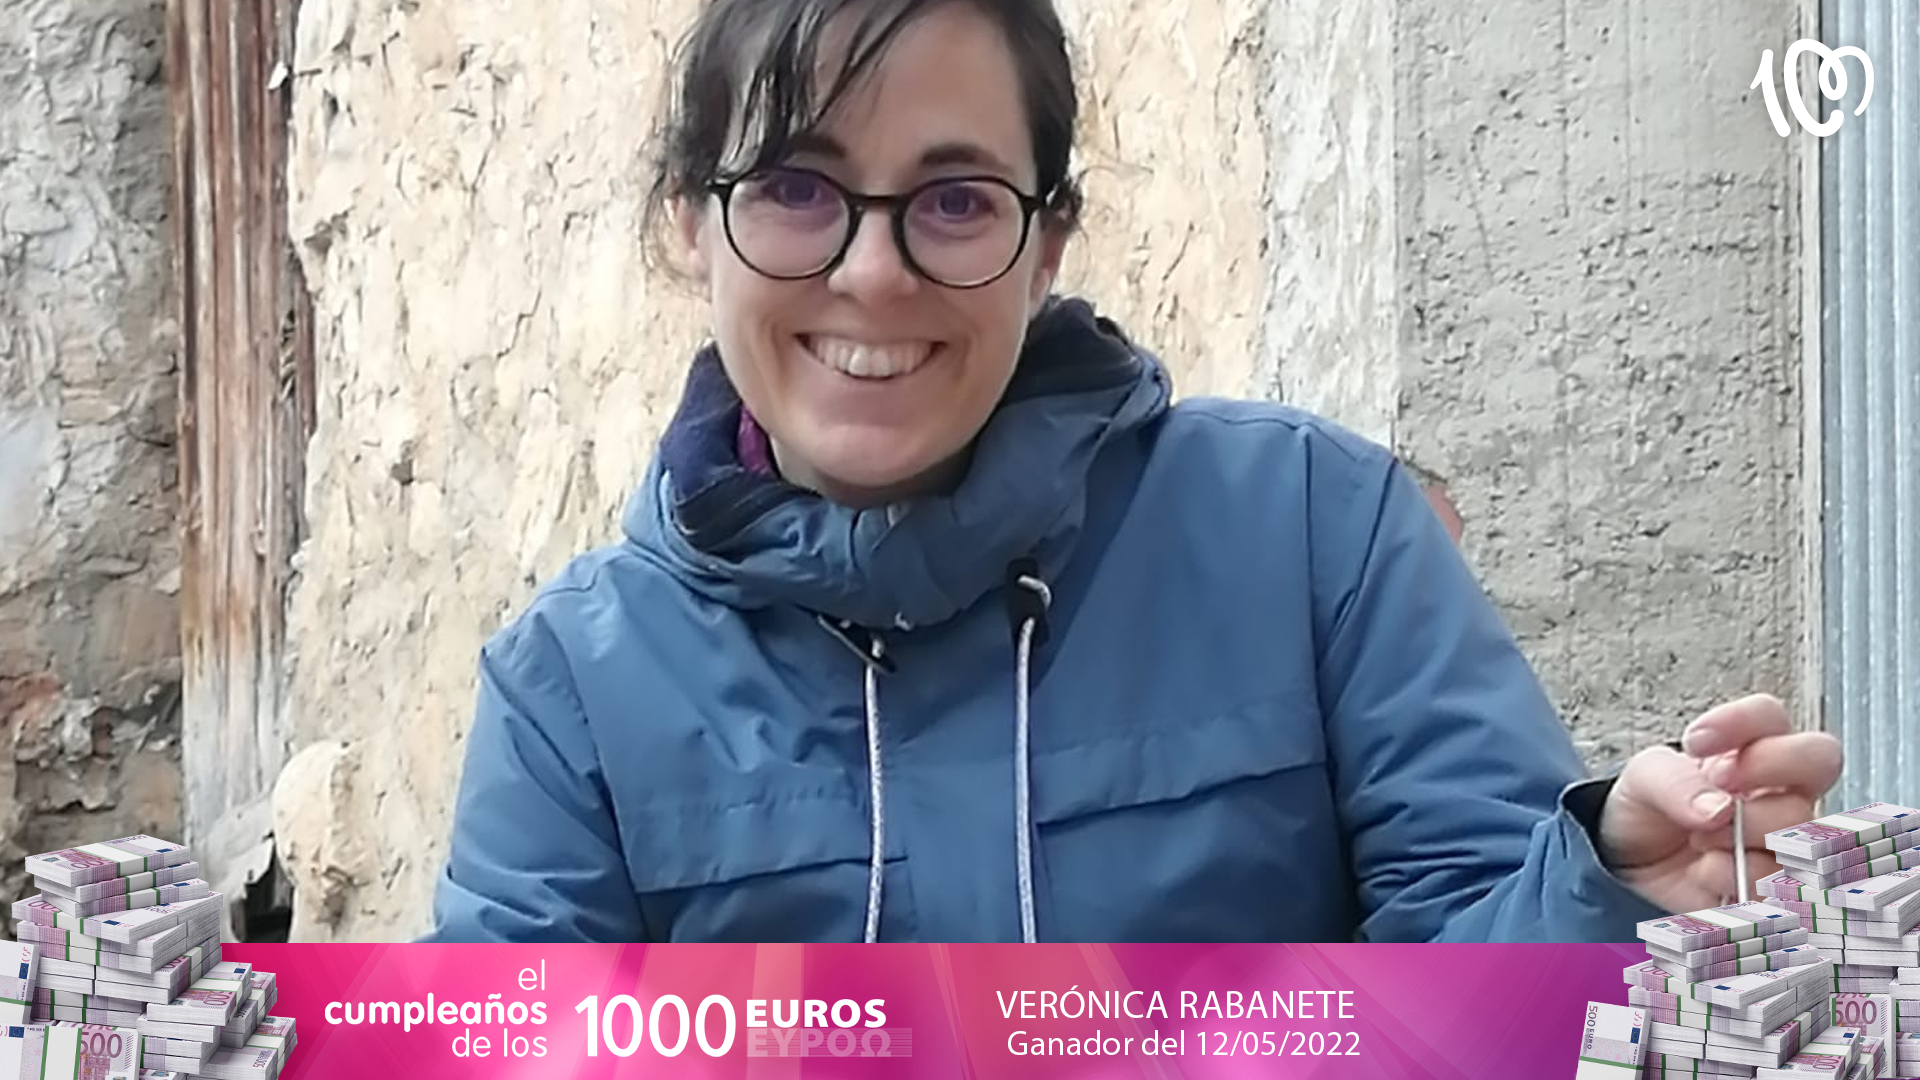 Verónica gana El Cumpleaños de los 1.000 euros: "¡Casi 19 años escuchando CADENA 100!"